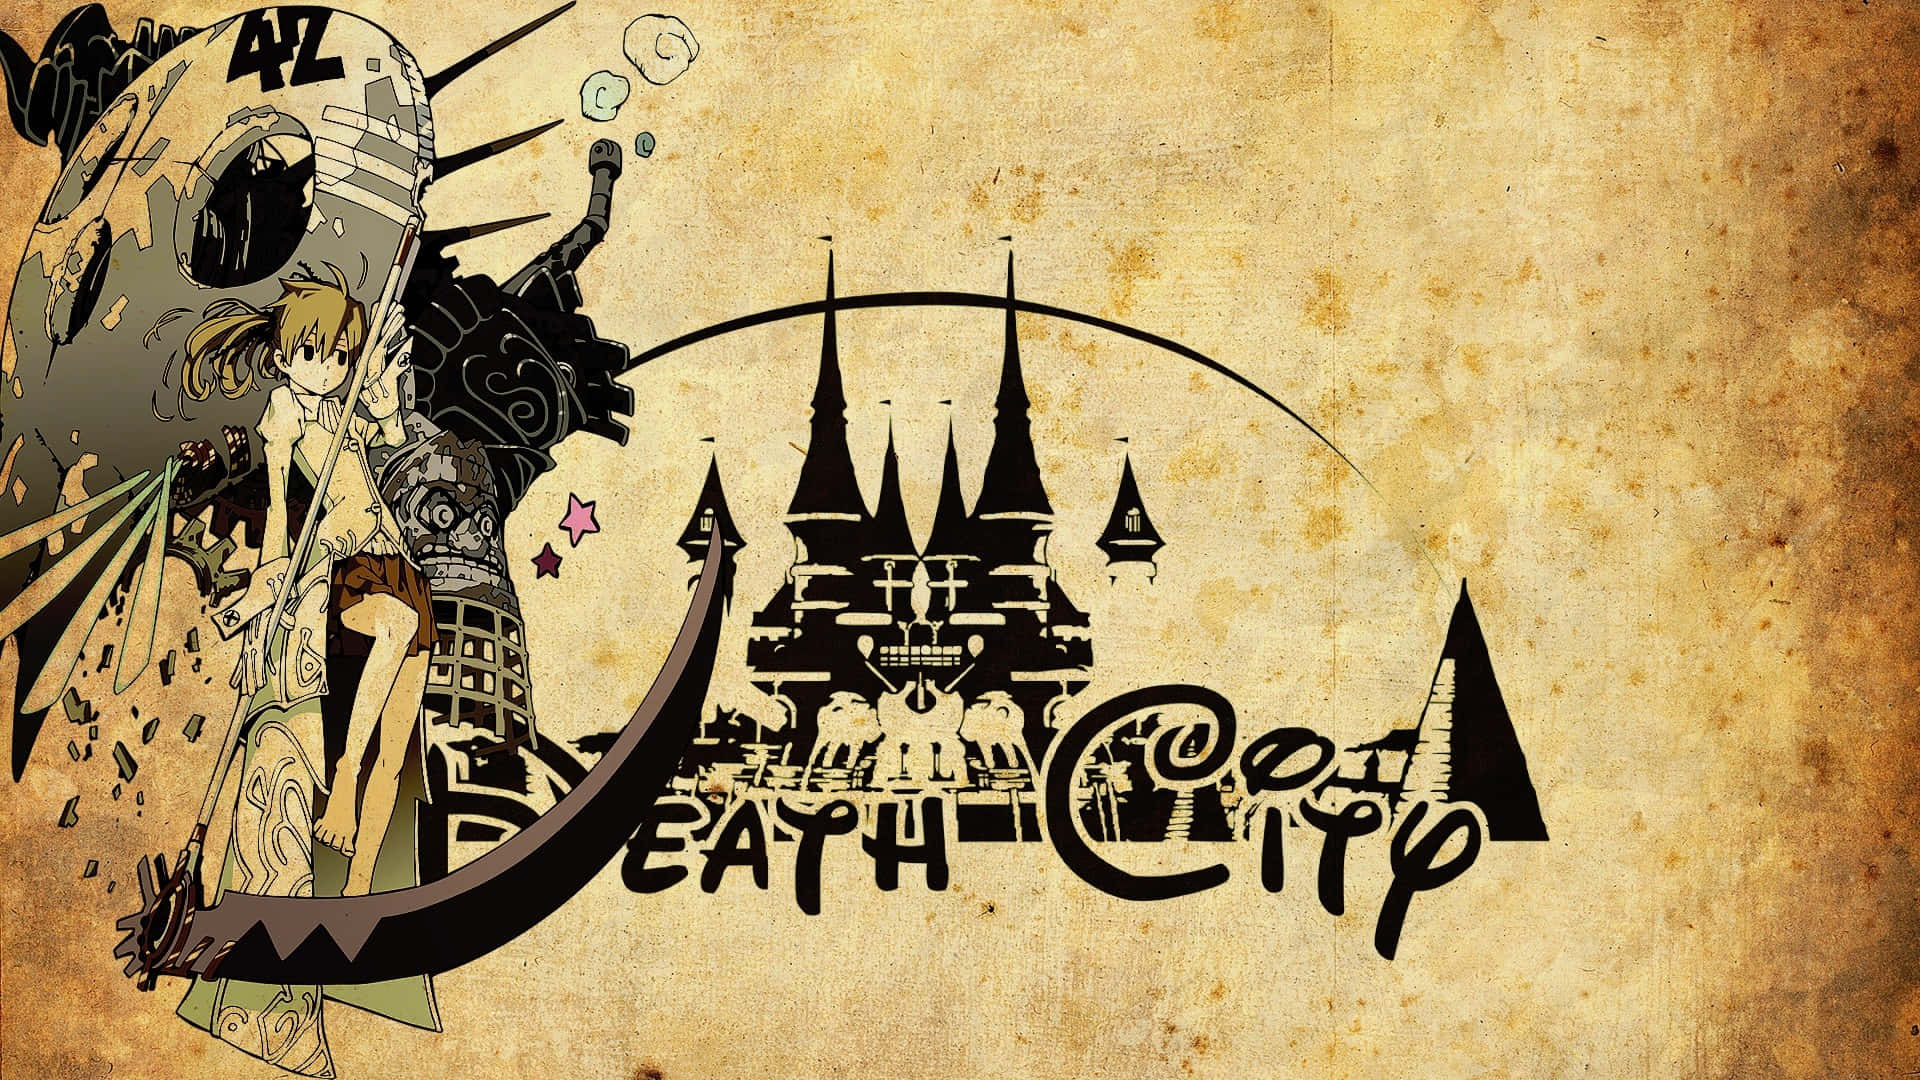 Hintergrundvon Soul Eater Death City